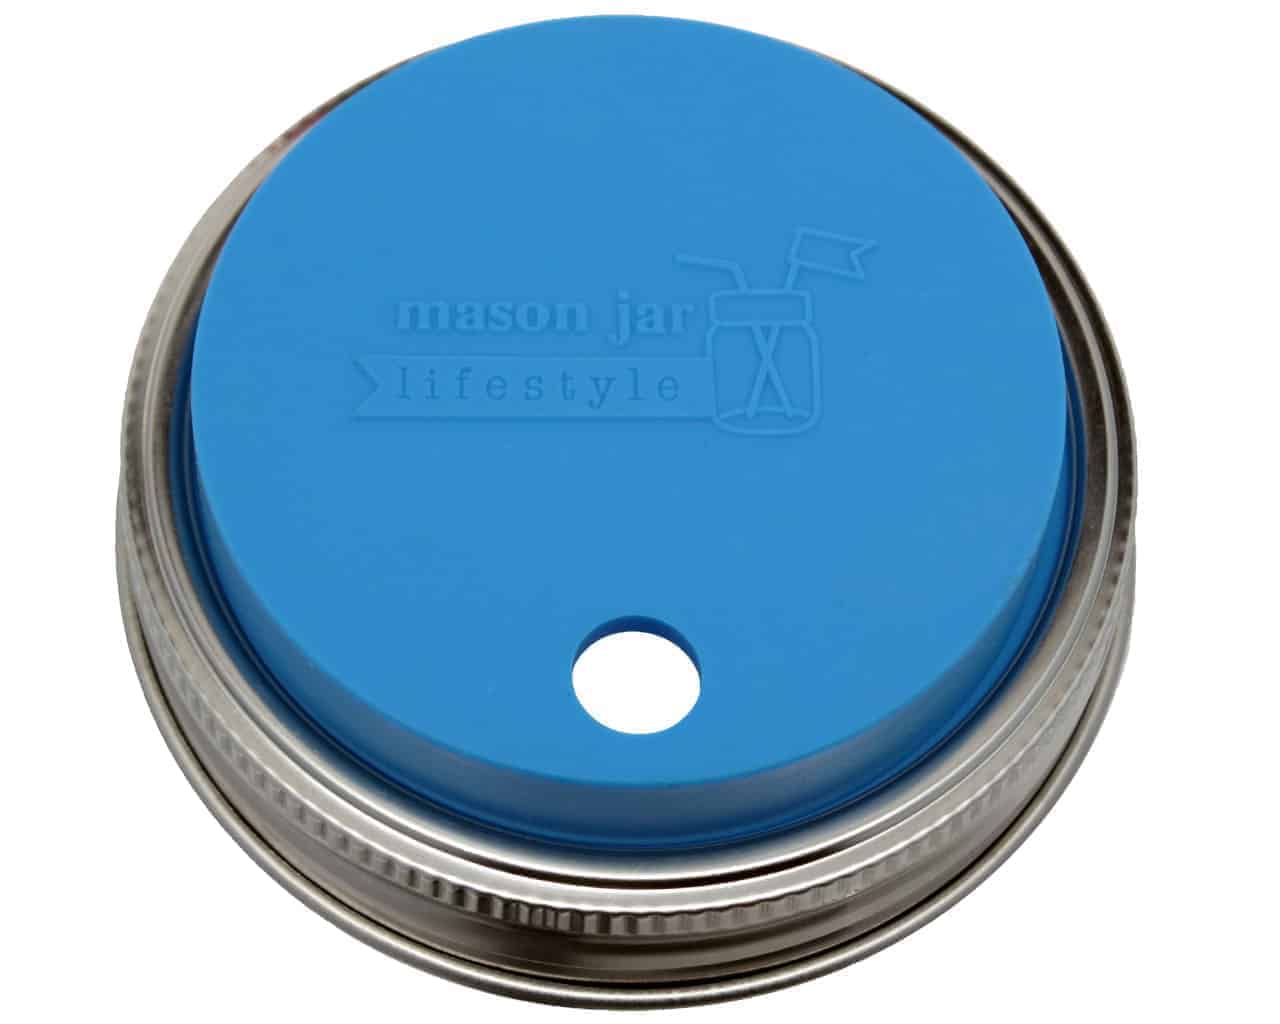 Straw Hole Tumbler Lids for Regular Mouth Mason Jars · Mason Jar Lifestyle